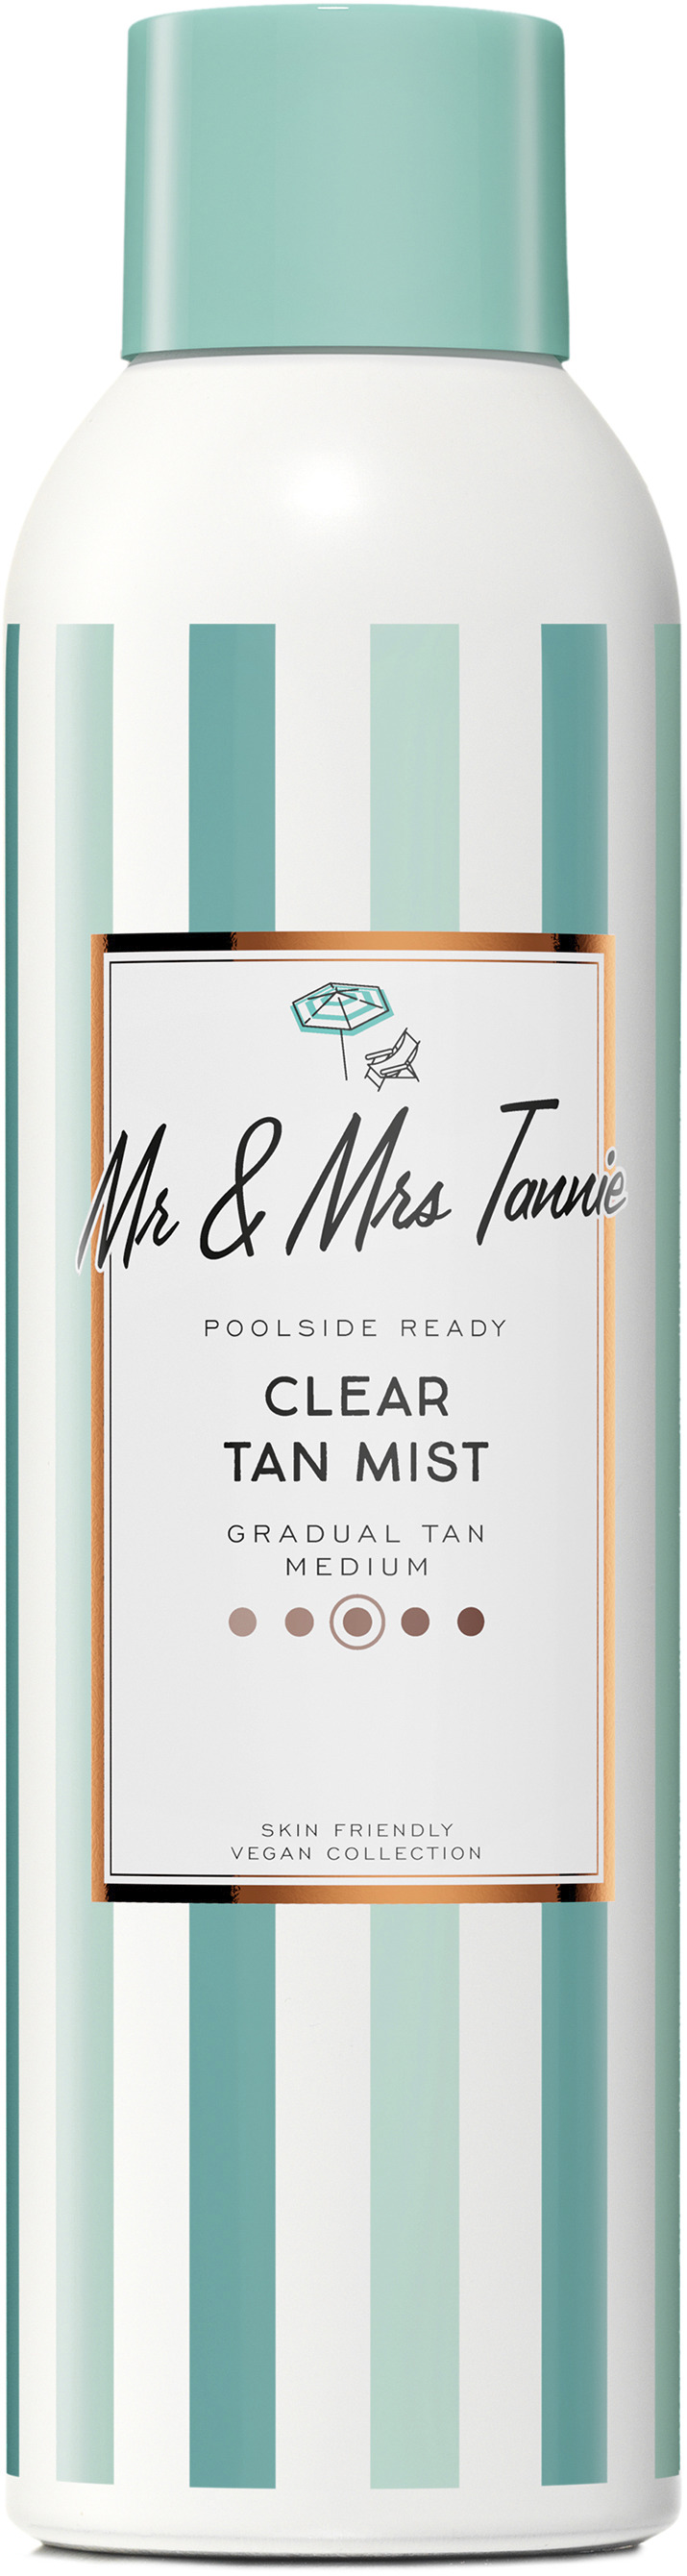 Mr & Mrs Tannie Clear Tan Mist 200 ml